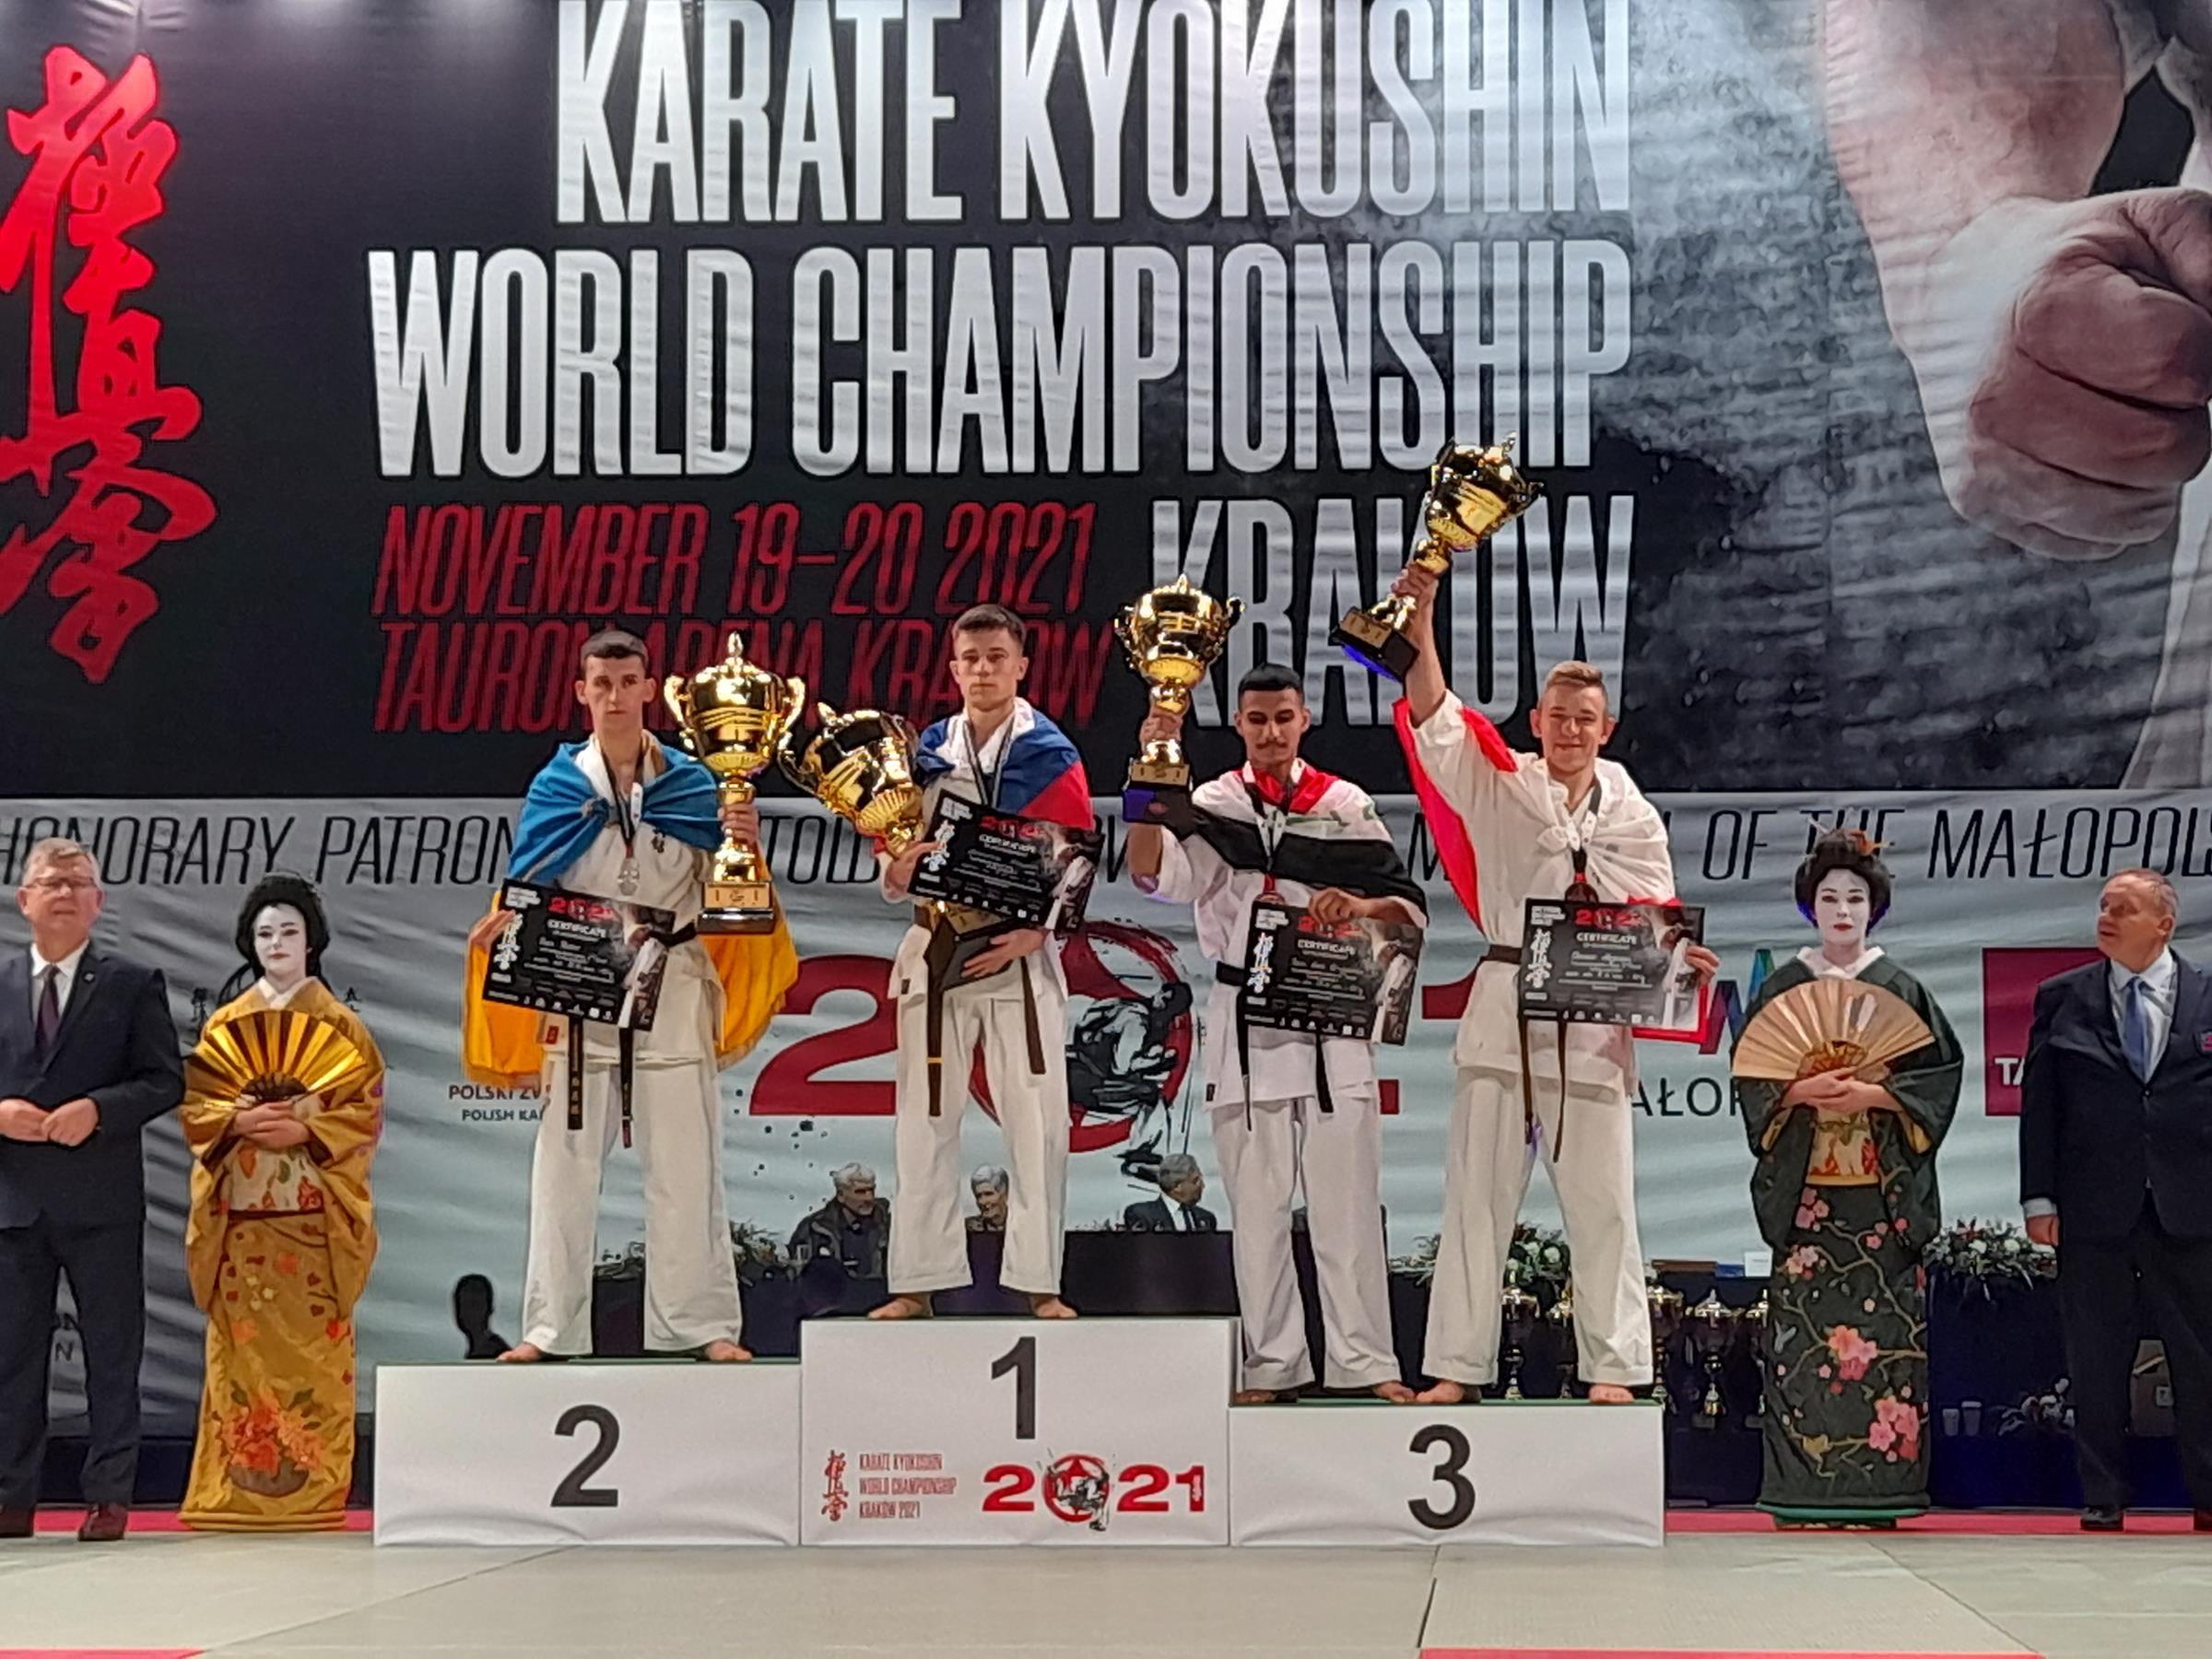 Zdj. nr. 5. Mistrzostw Świata w Karate Kyokushin - 19-20.11.2021 r., Kraków